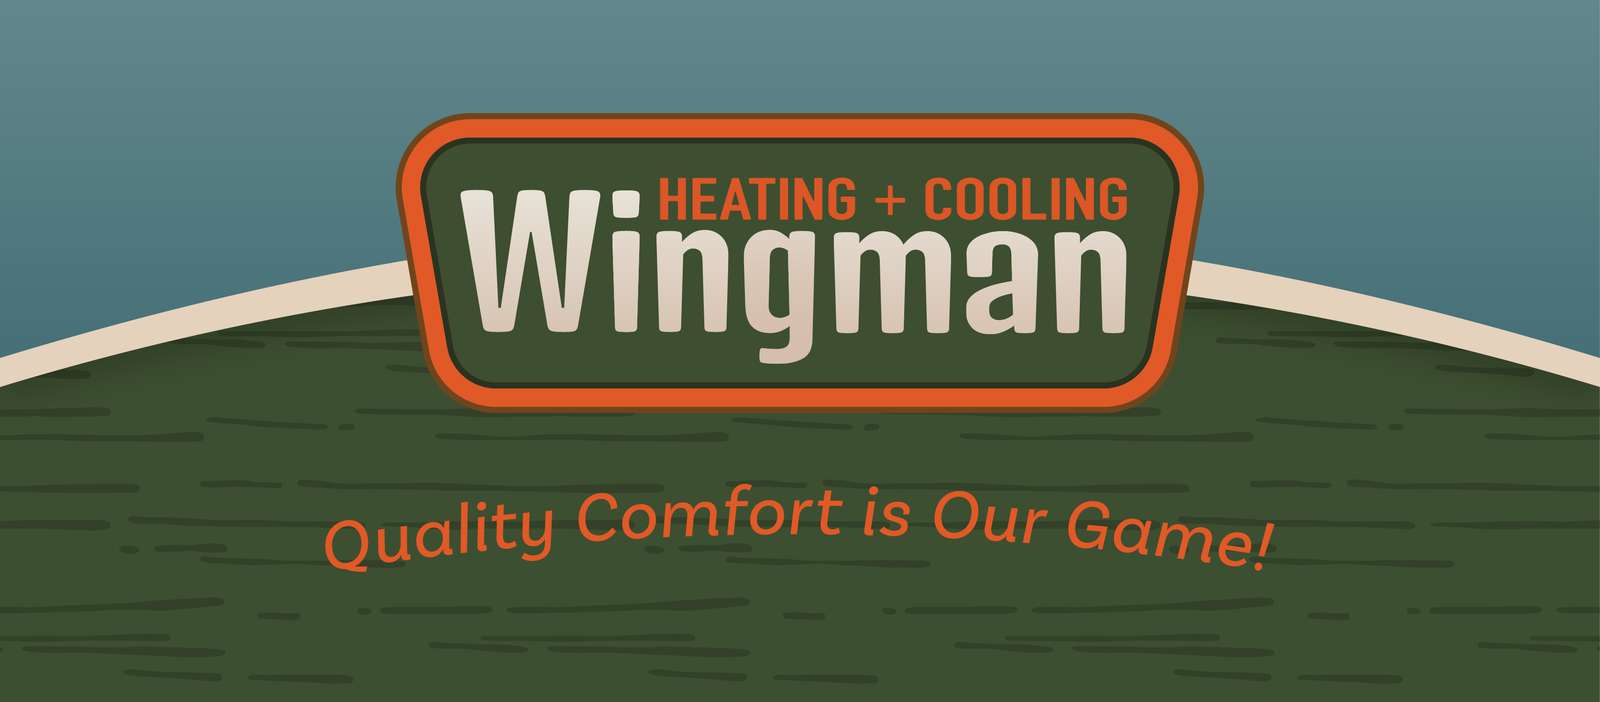 ウイングマンの冷暖房 写真からオンラインパズル